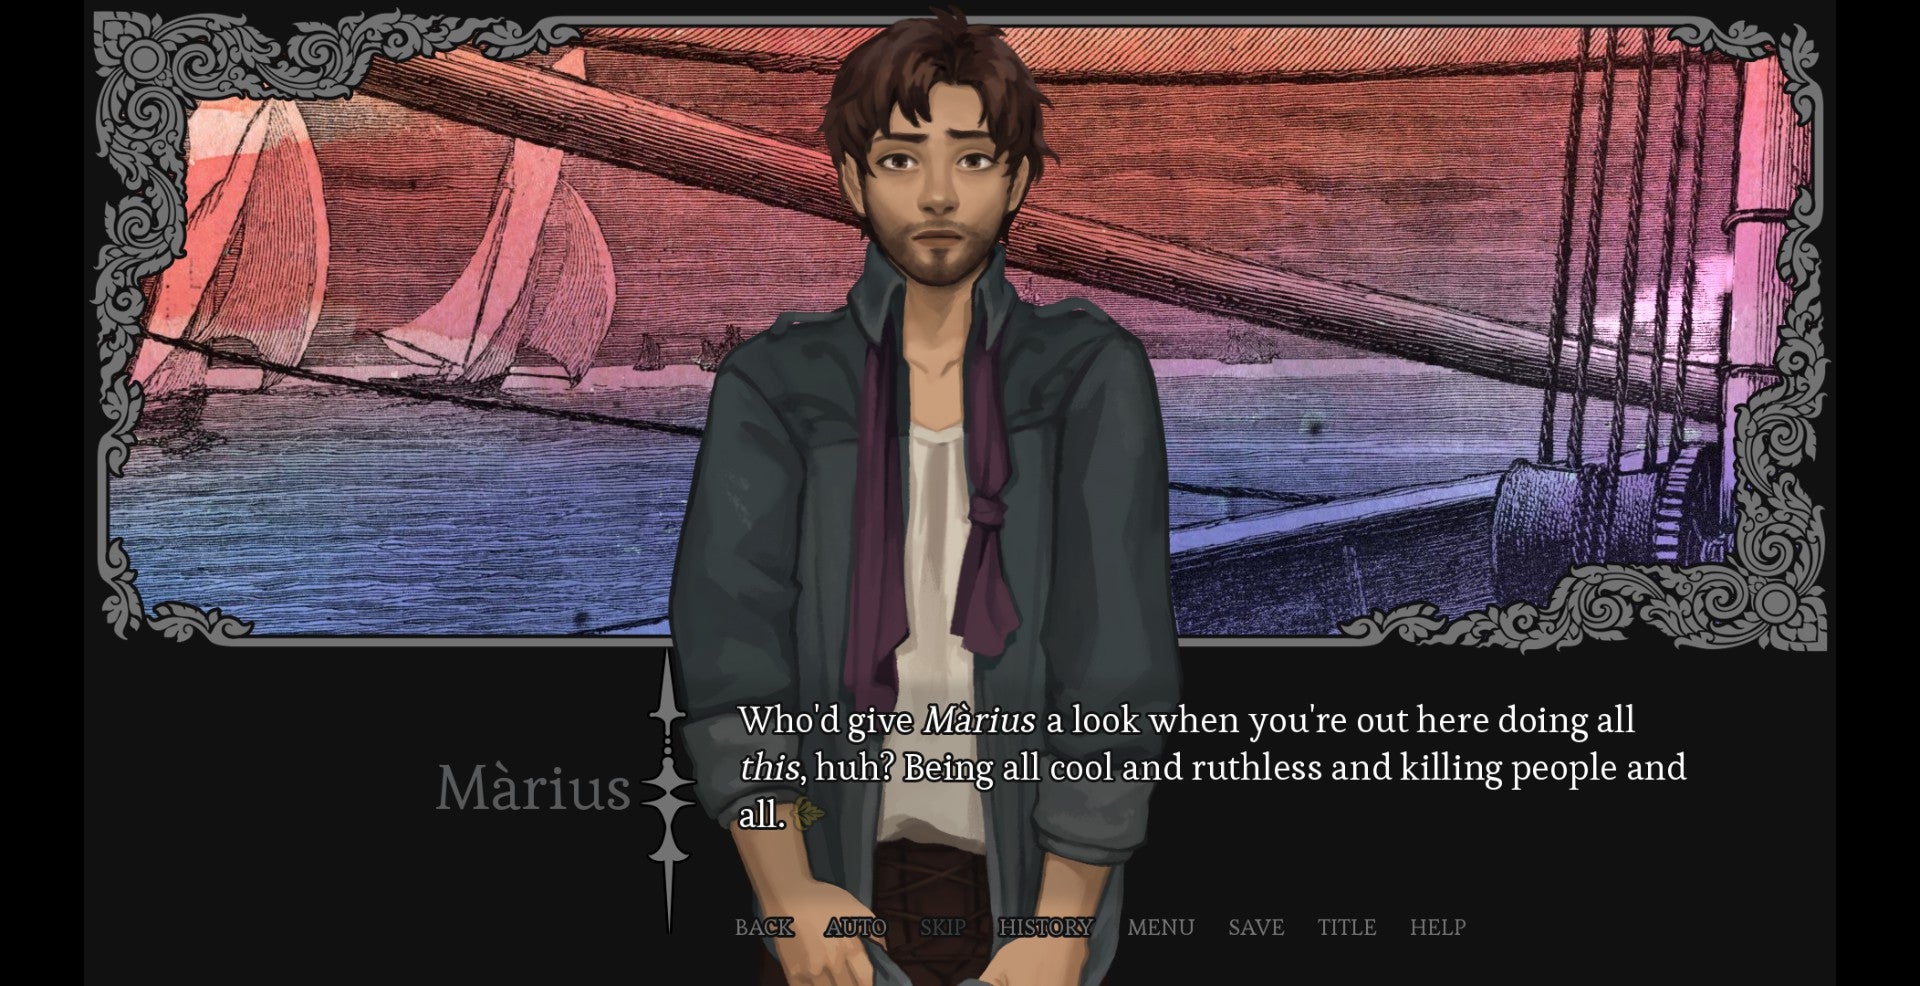 Scena del viaggio in mare tratta dal romanzo visuale fantasy Amarantus, in cui Màrius si lamenta che tu, Arik, stai ostacolando involontariamente i suoi progressi romantici su un altro personaggio.